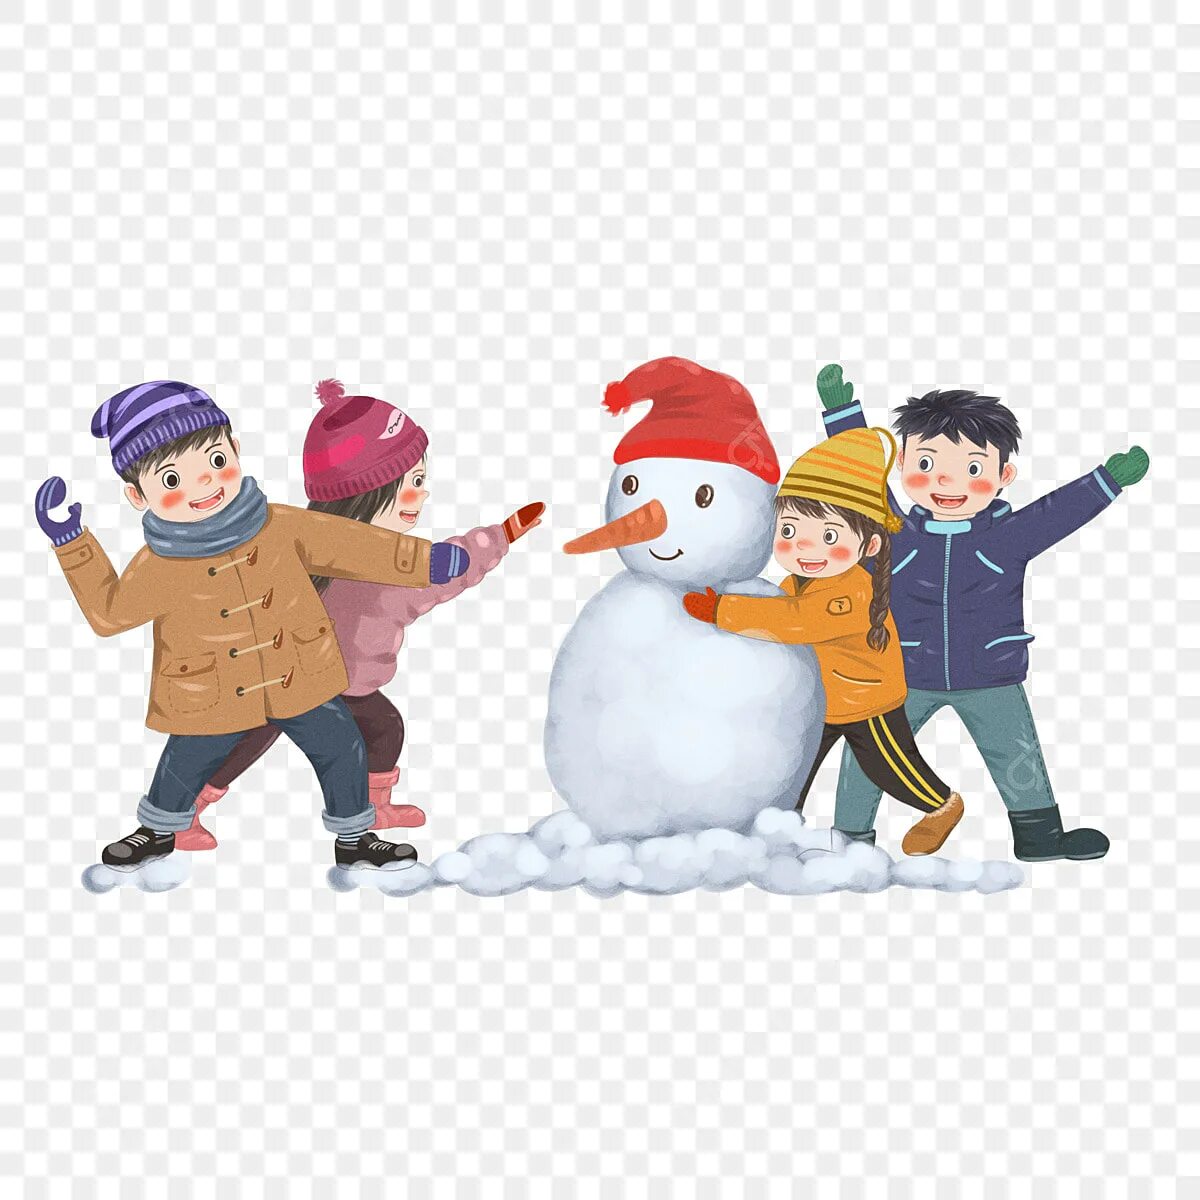 Лепить снеговика зимой. Игра в снежки. Дети играют в снежки. Зимние забавы на белом фоне. Дети лепят снеговика.